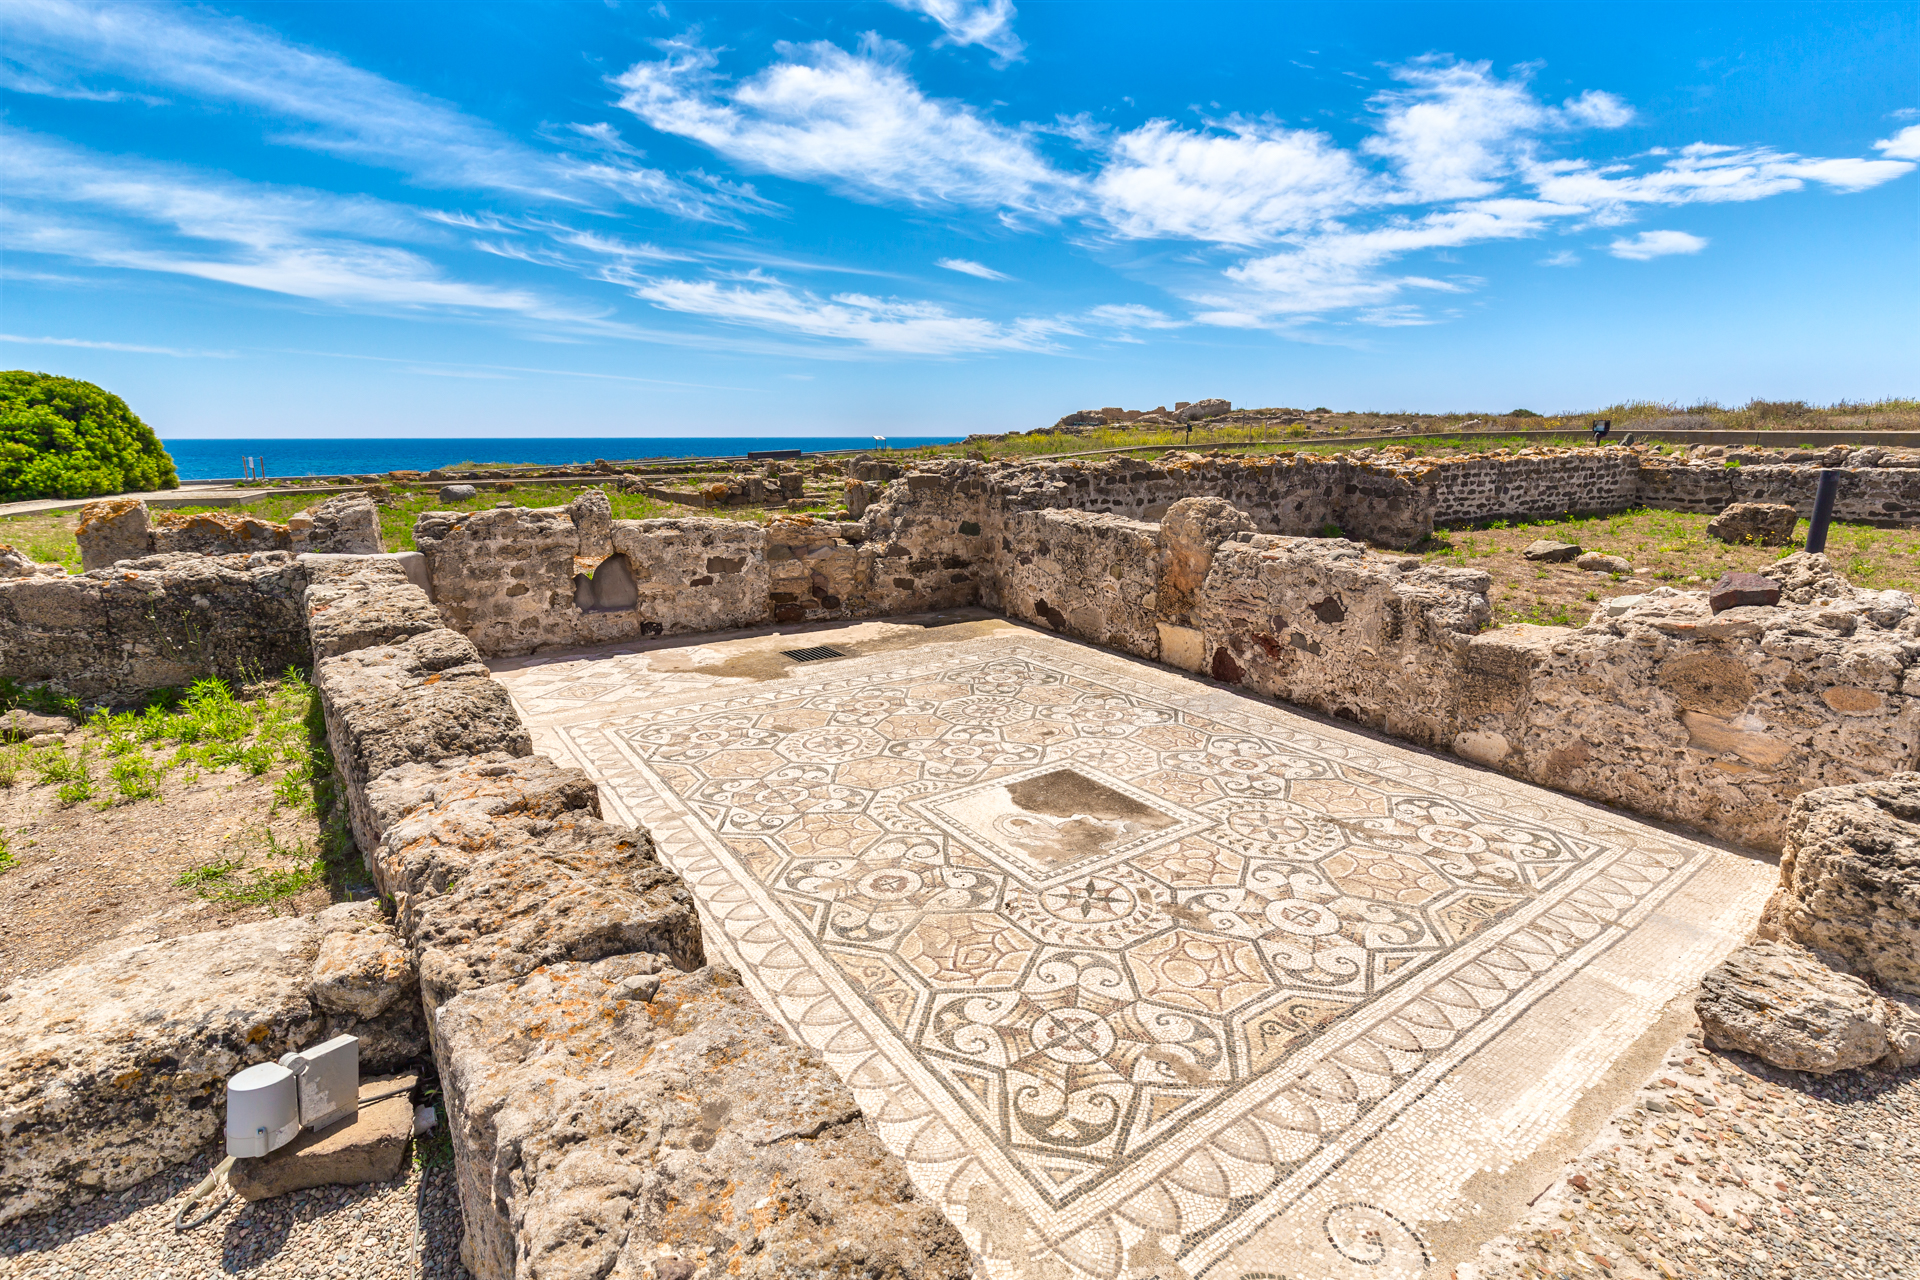 Pula, sitio arqueológico de nora, mosaicos. Foto de Alessandro Addis.